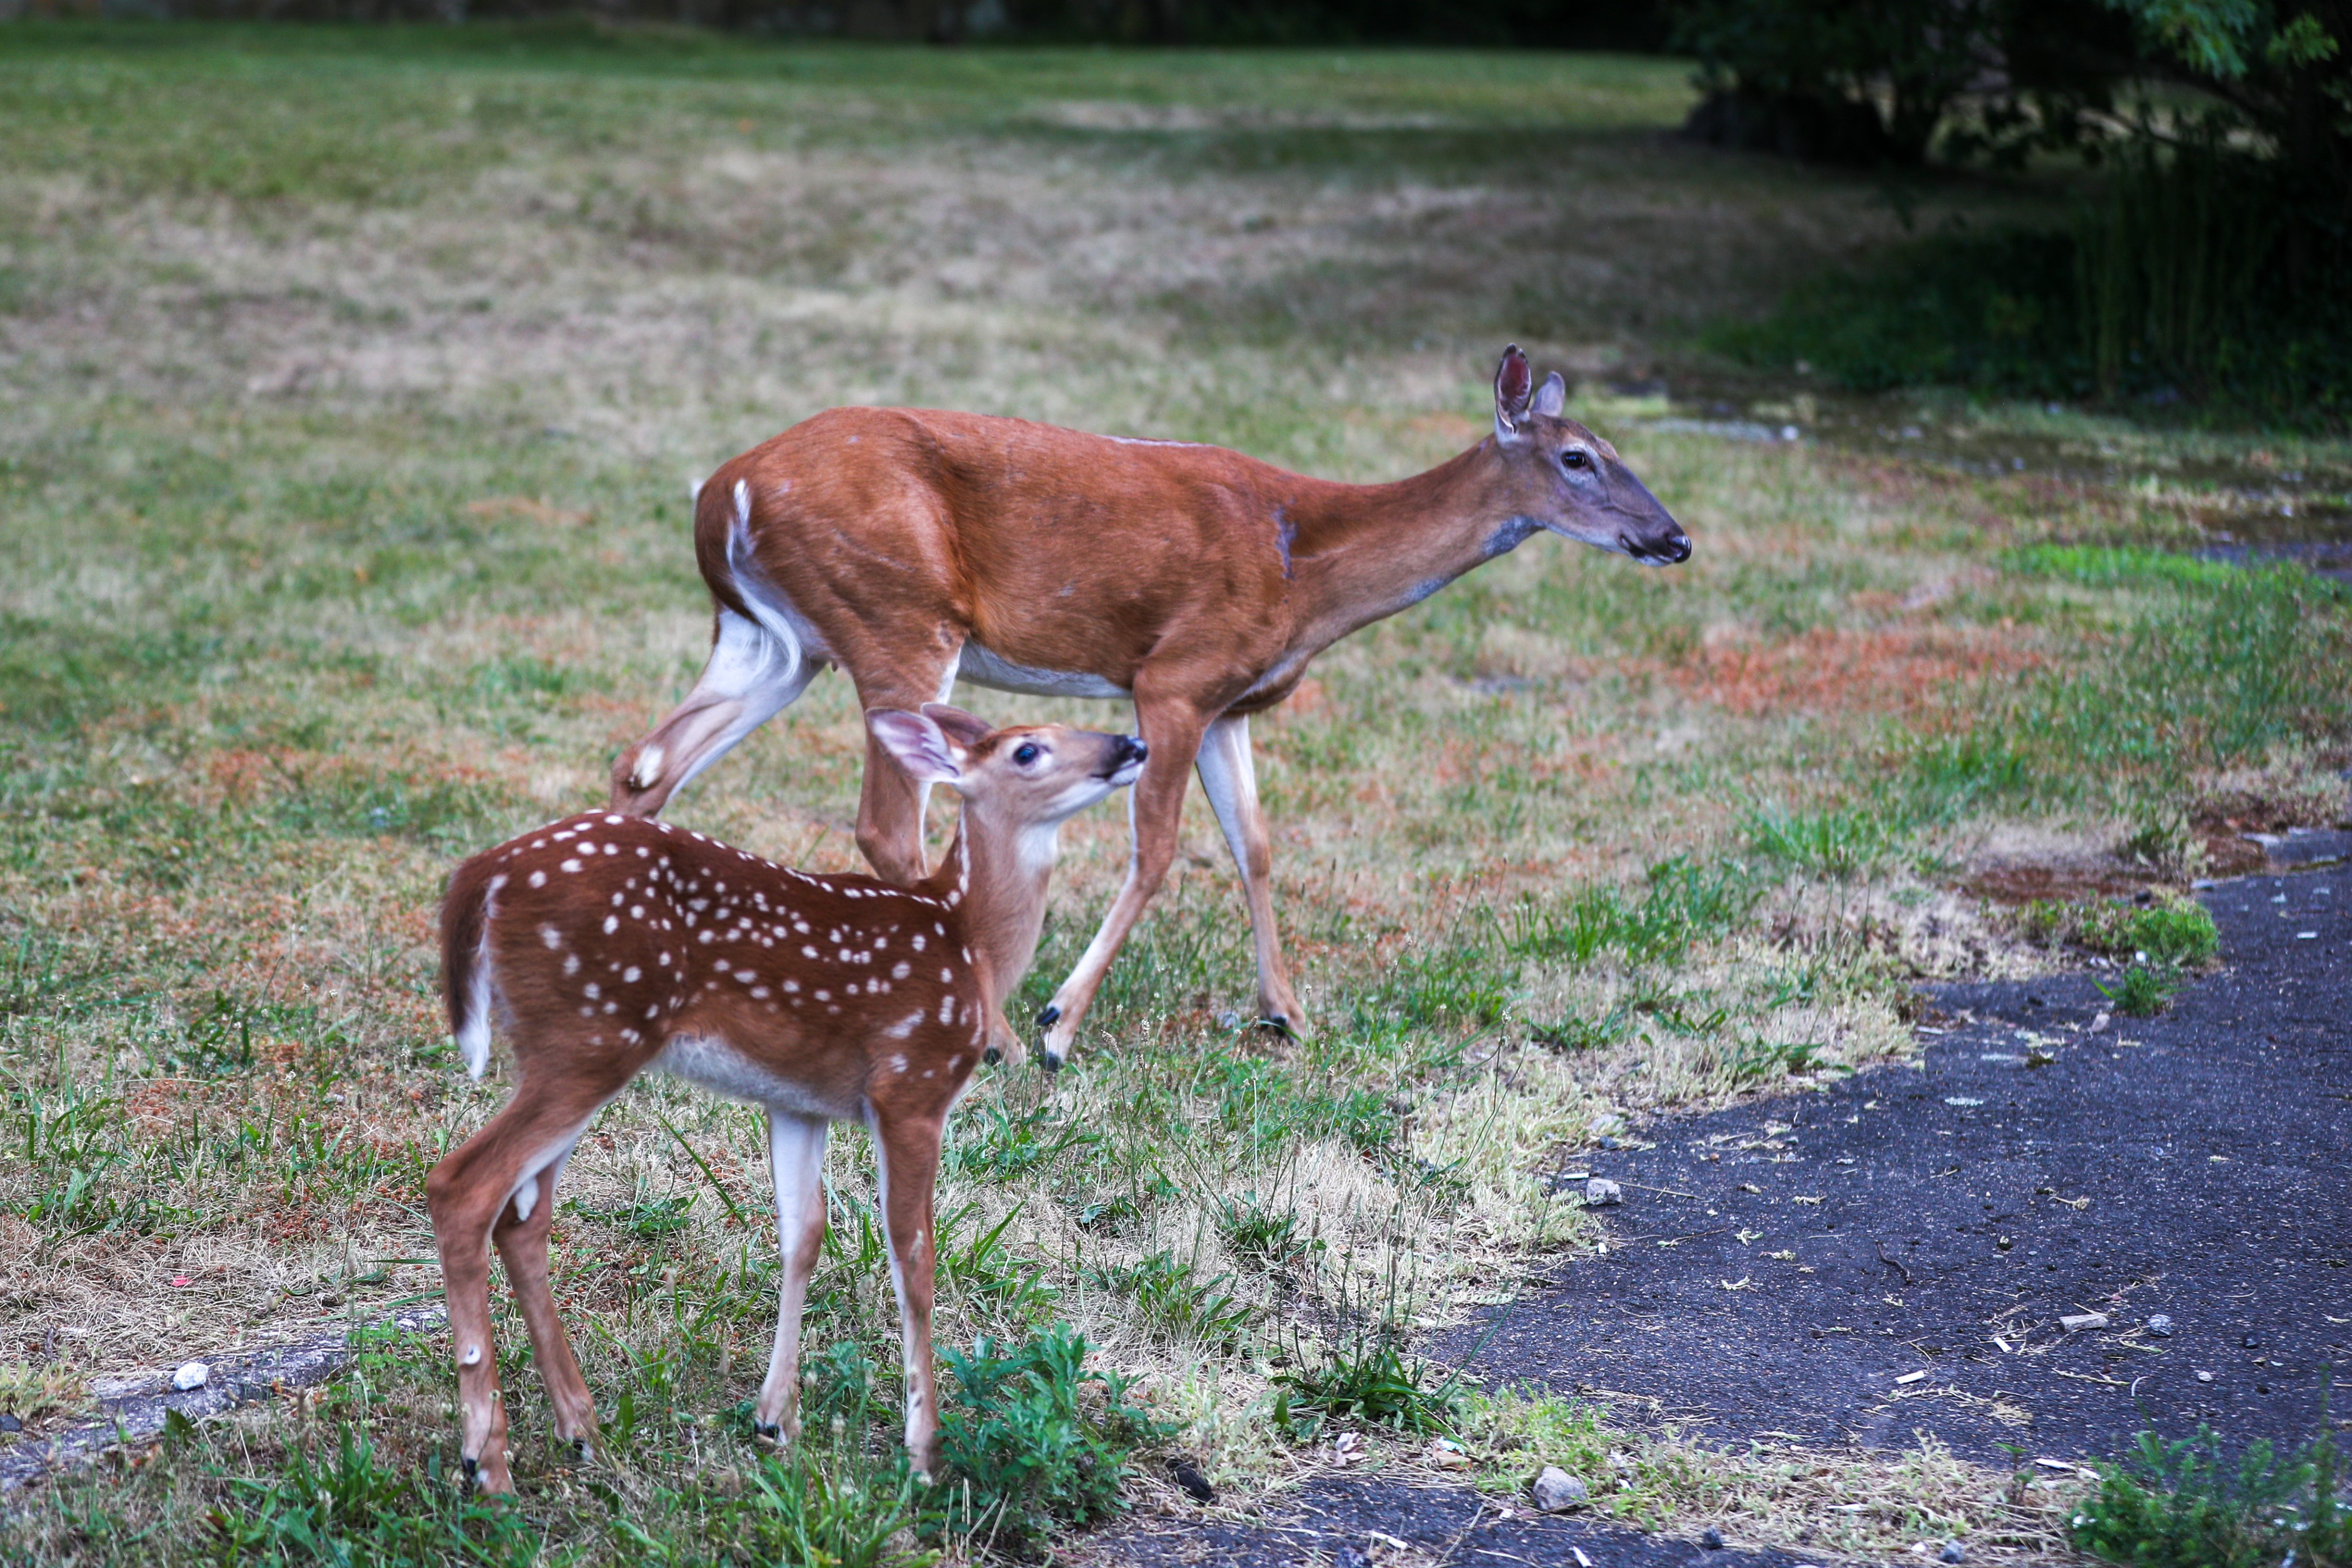 Deers in New Jersey's neighborhood